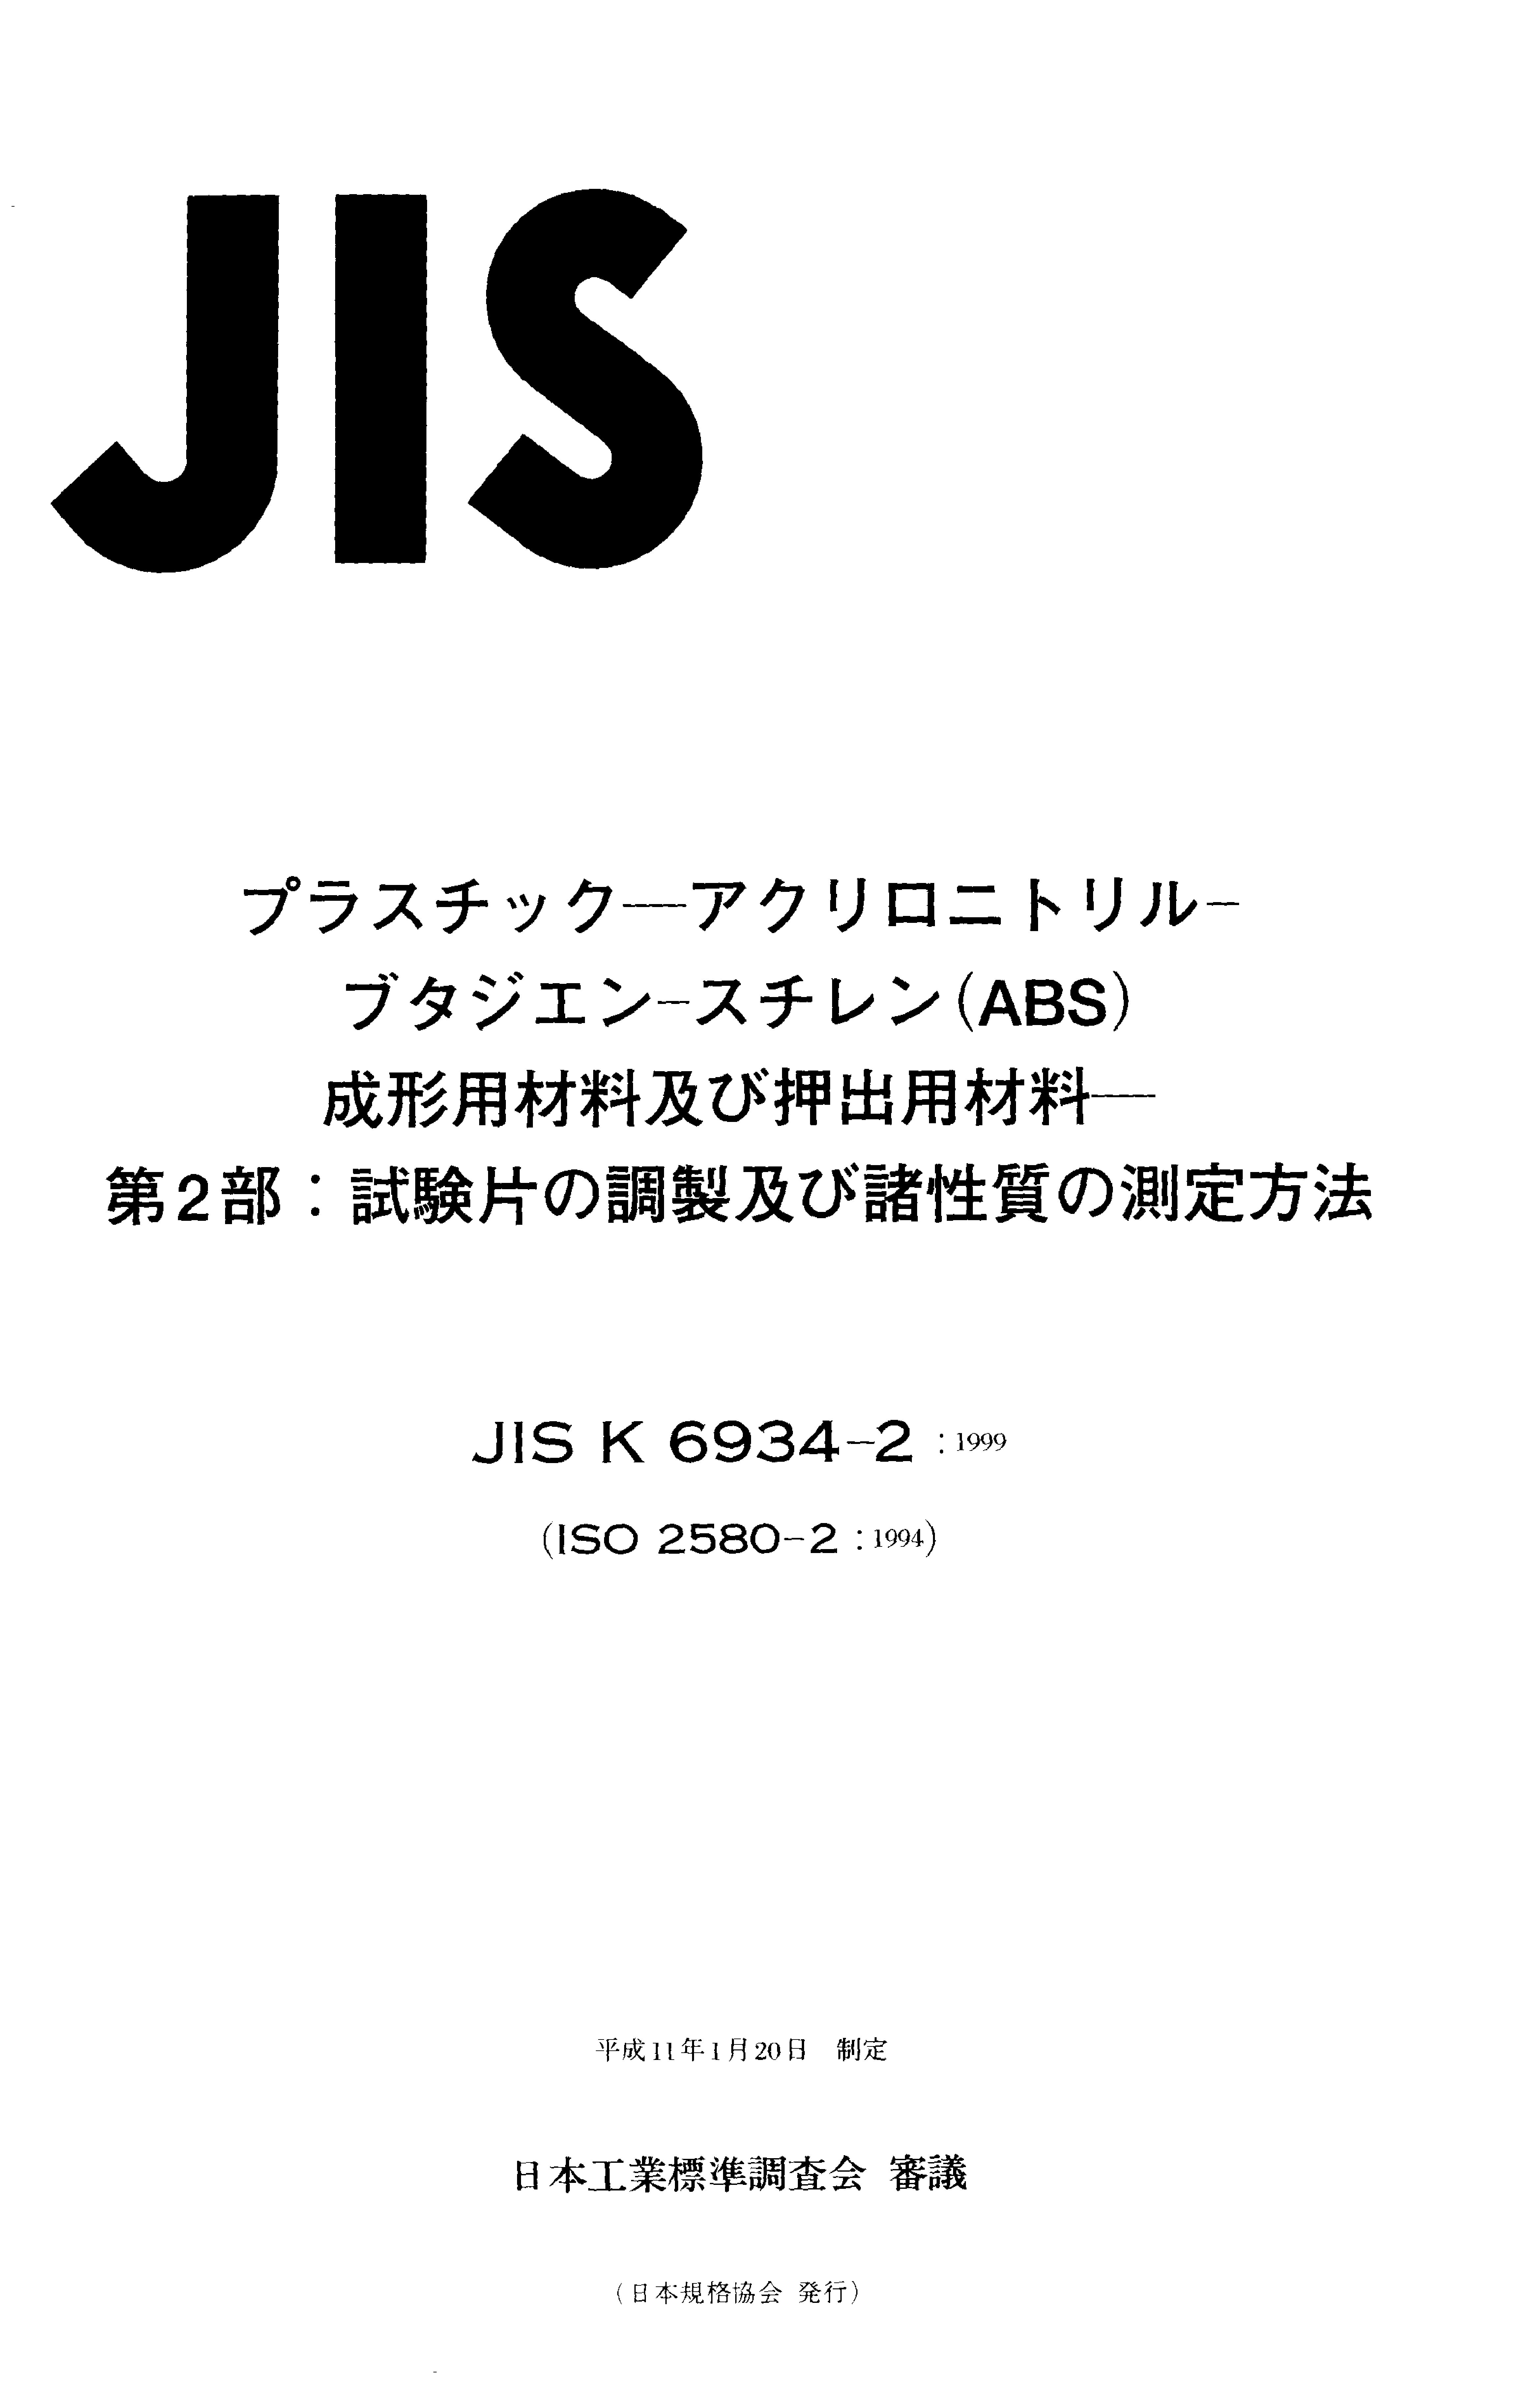 JIS K 6934-2:1999